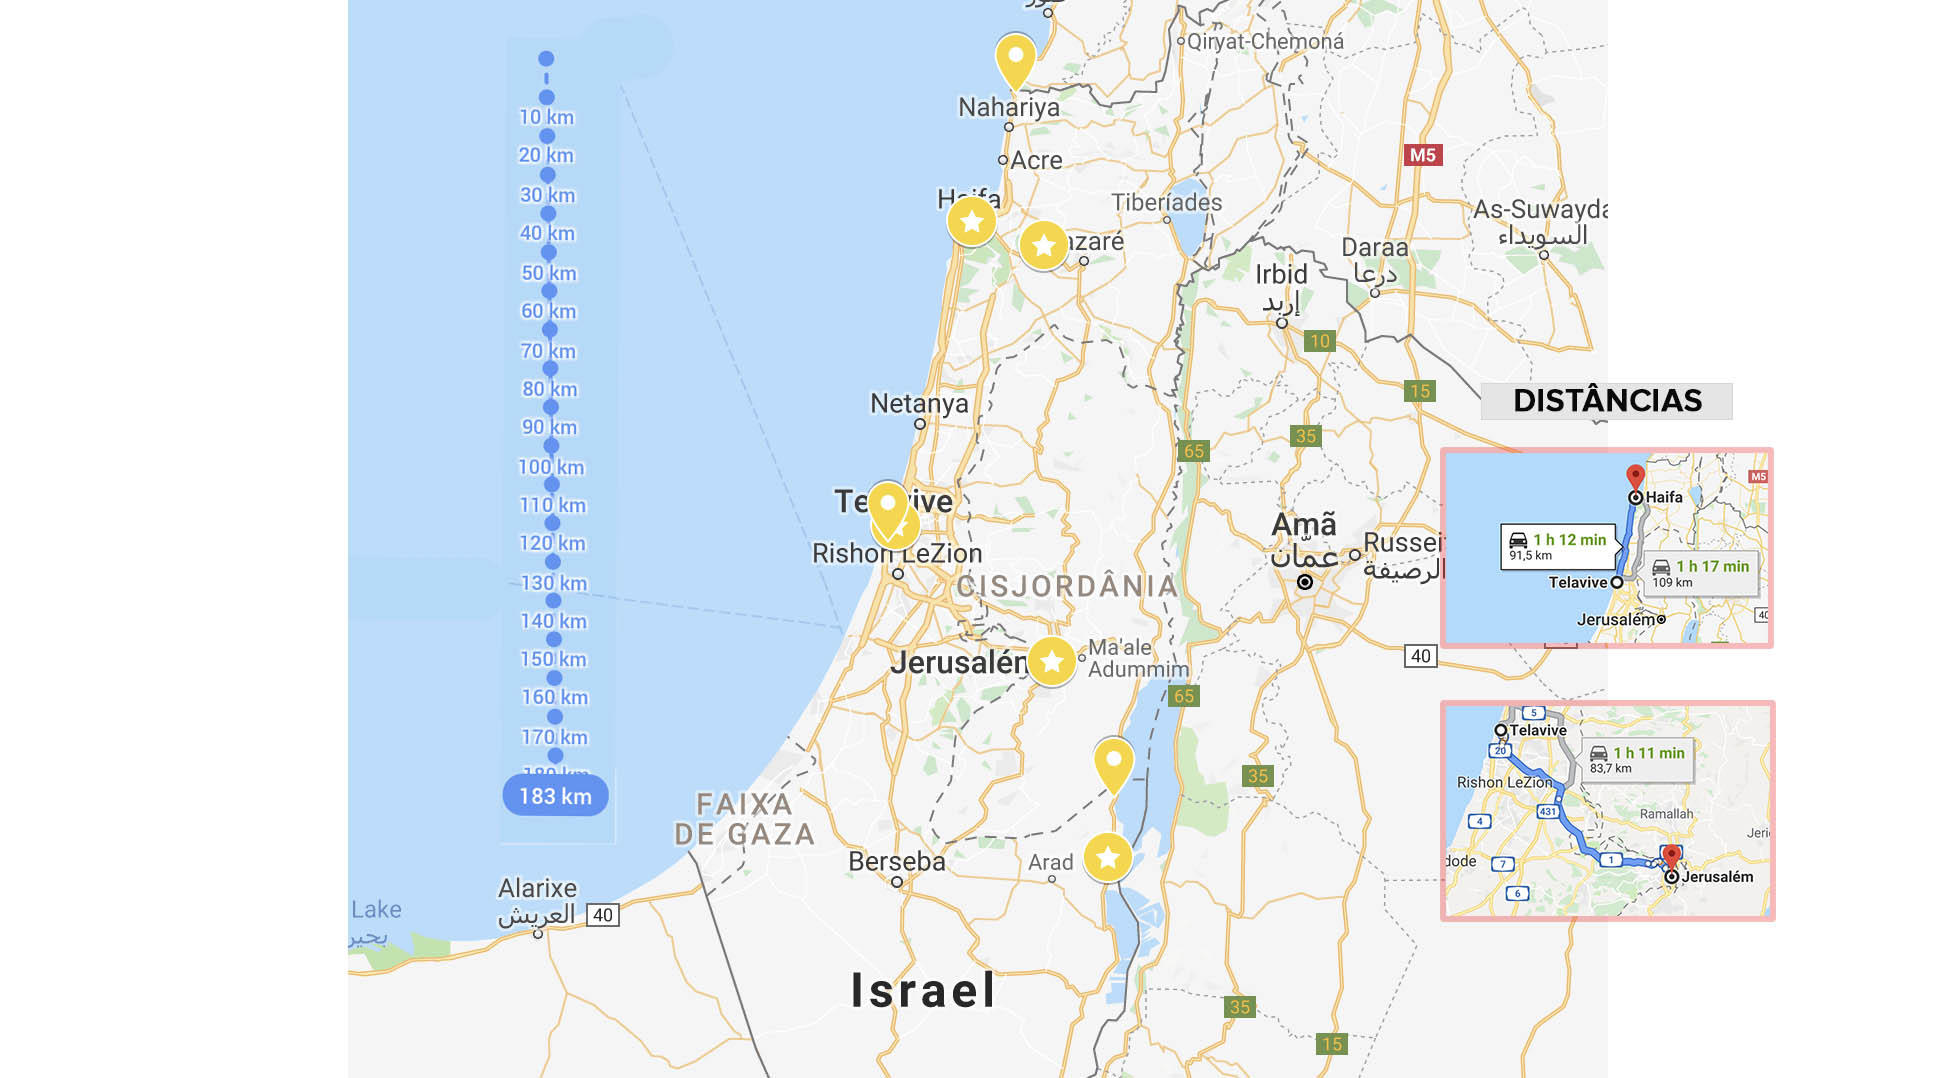 mapa de israel com distancias